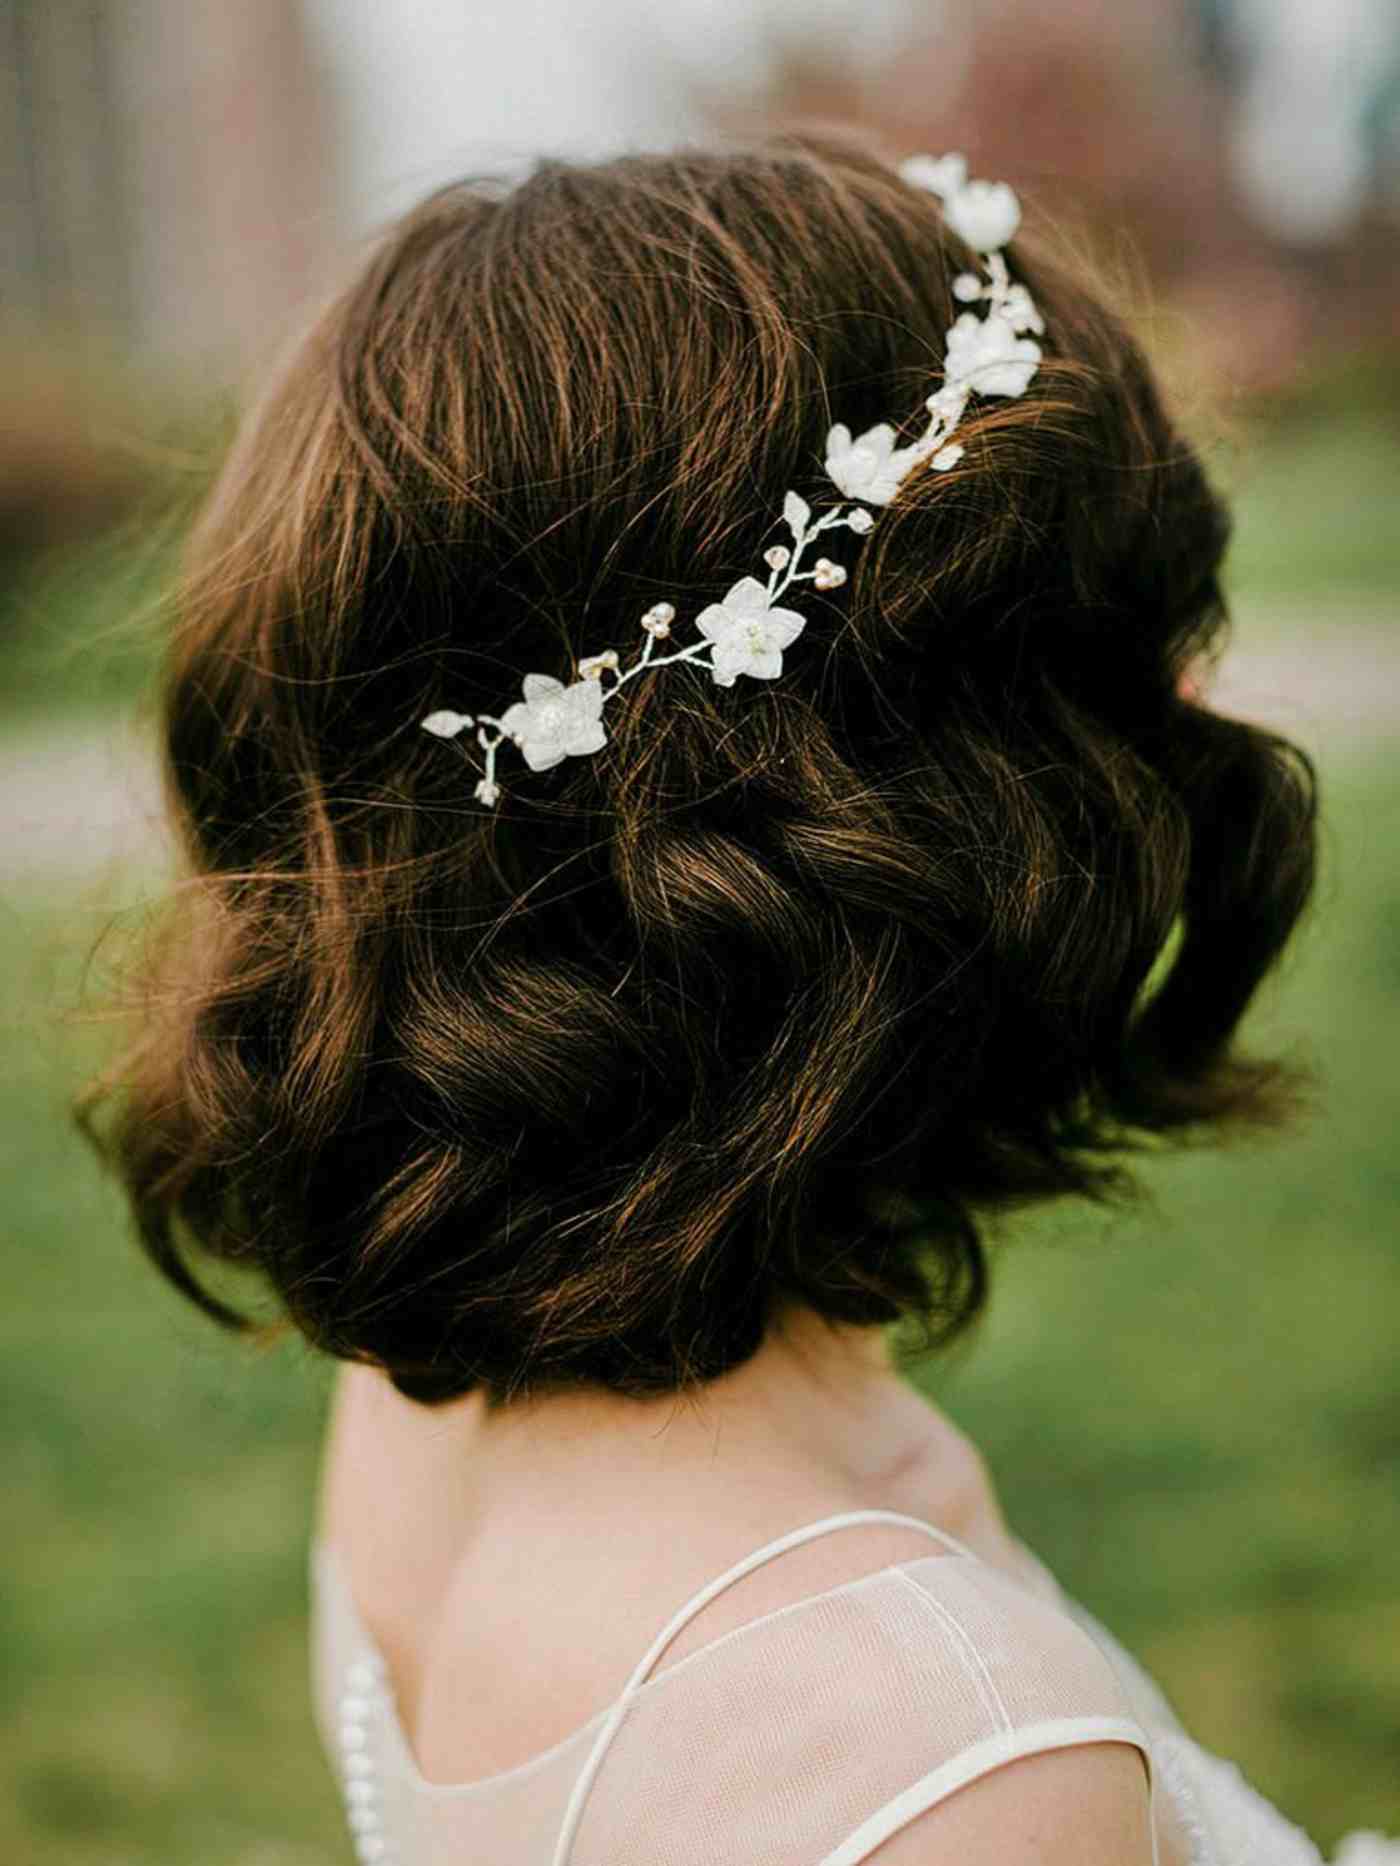 Feminine Brautfrisur mit kurzen Haaren und Haarschmuck mit Blüten.